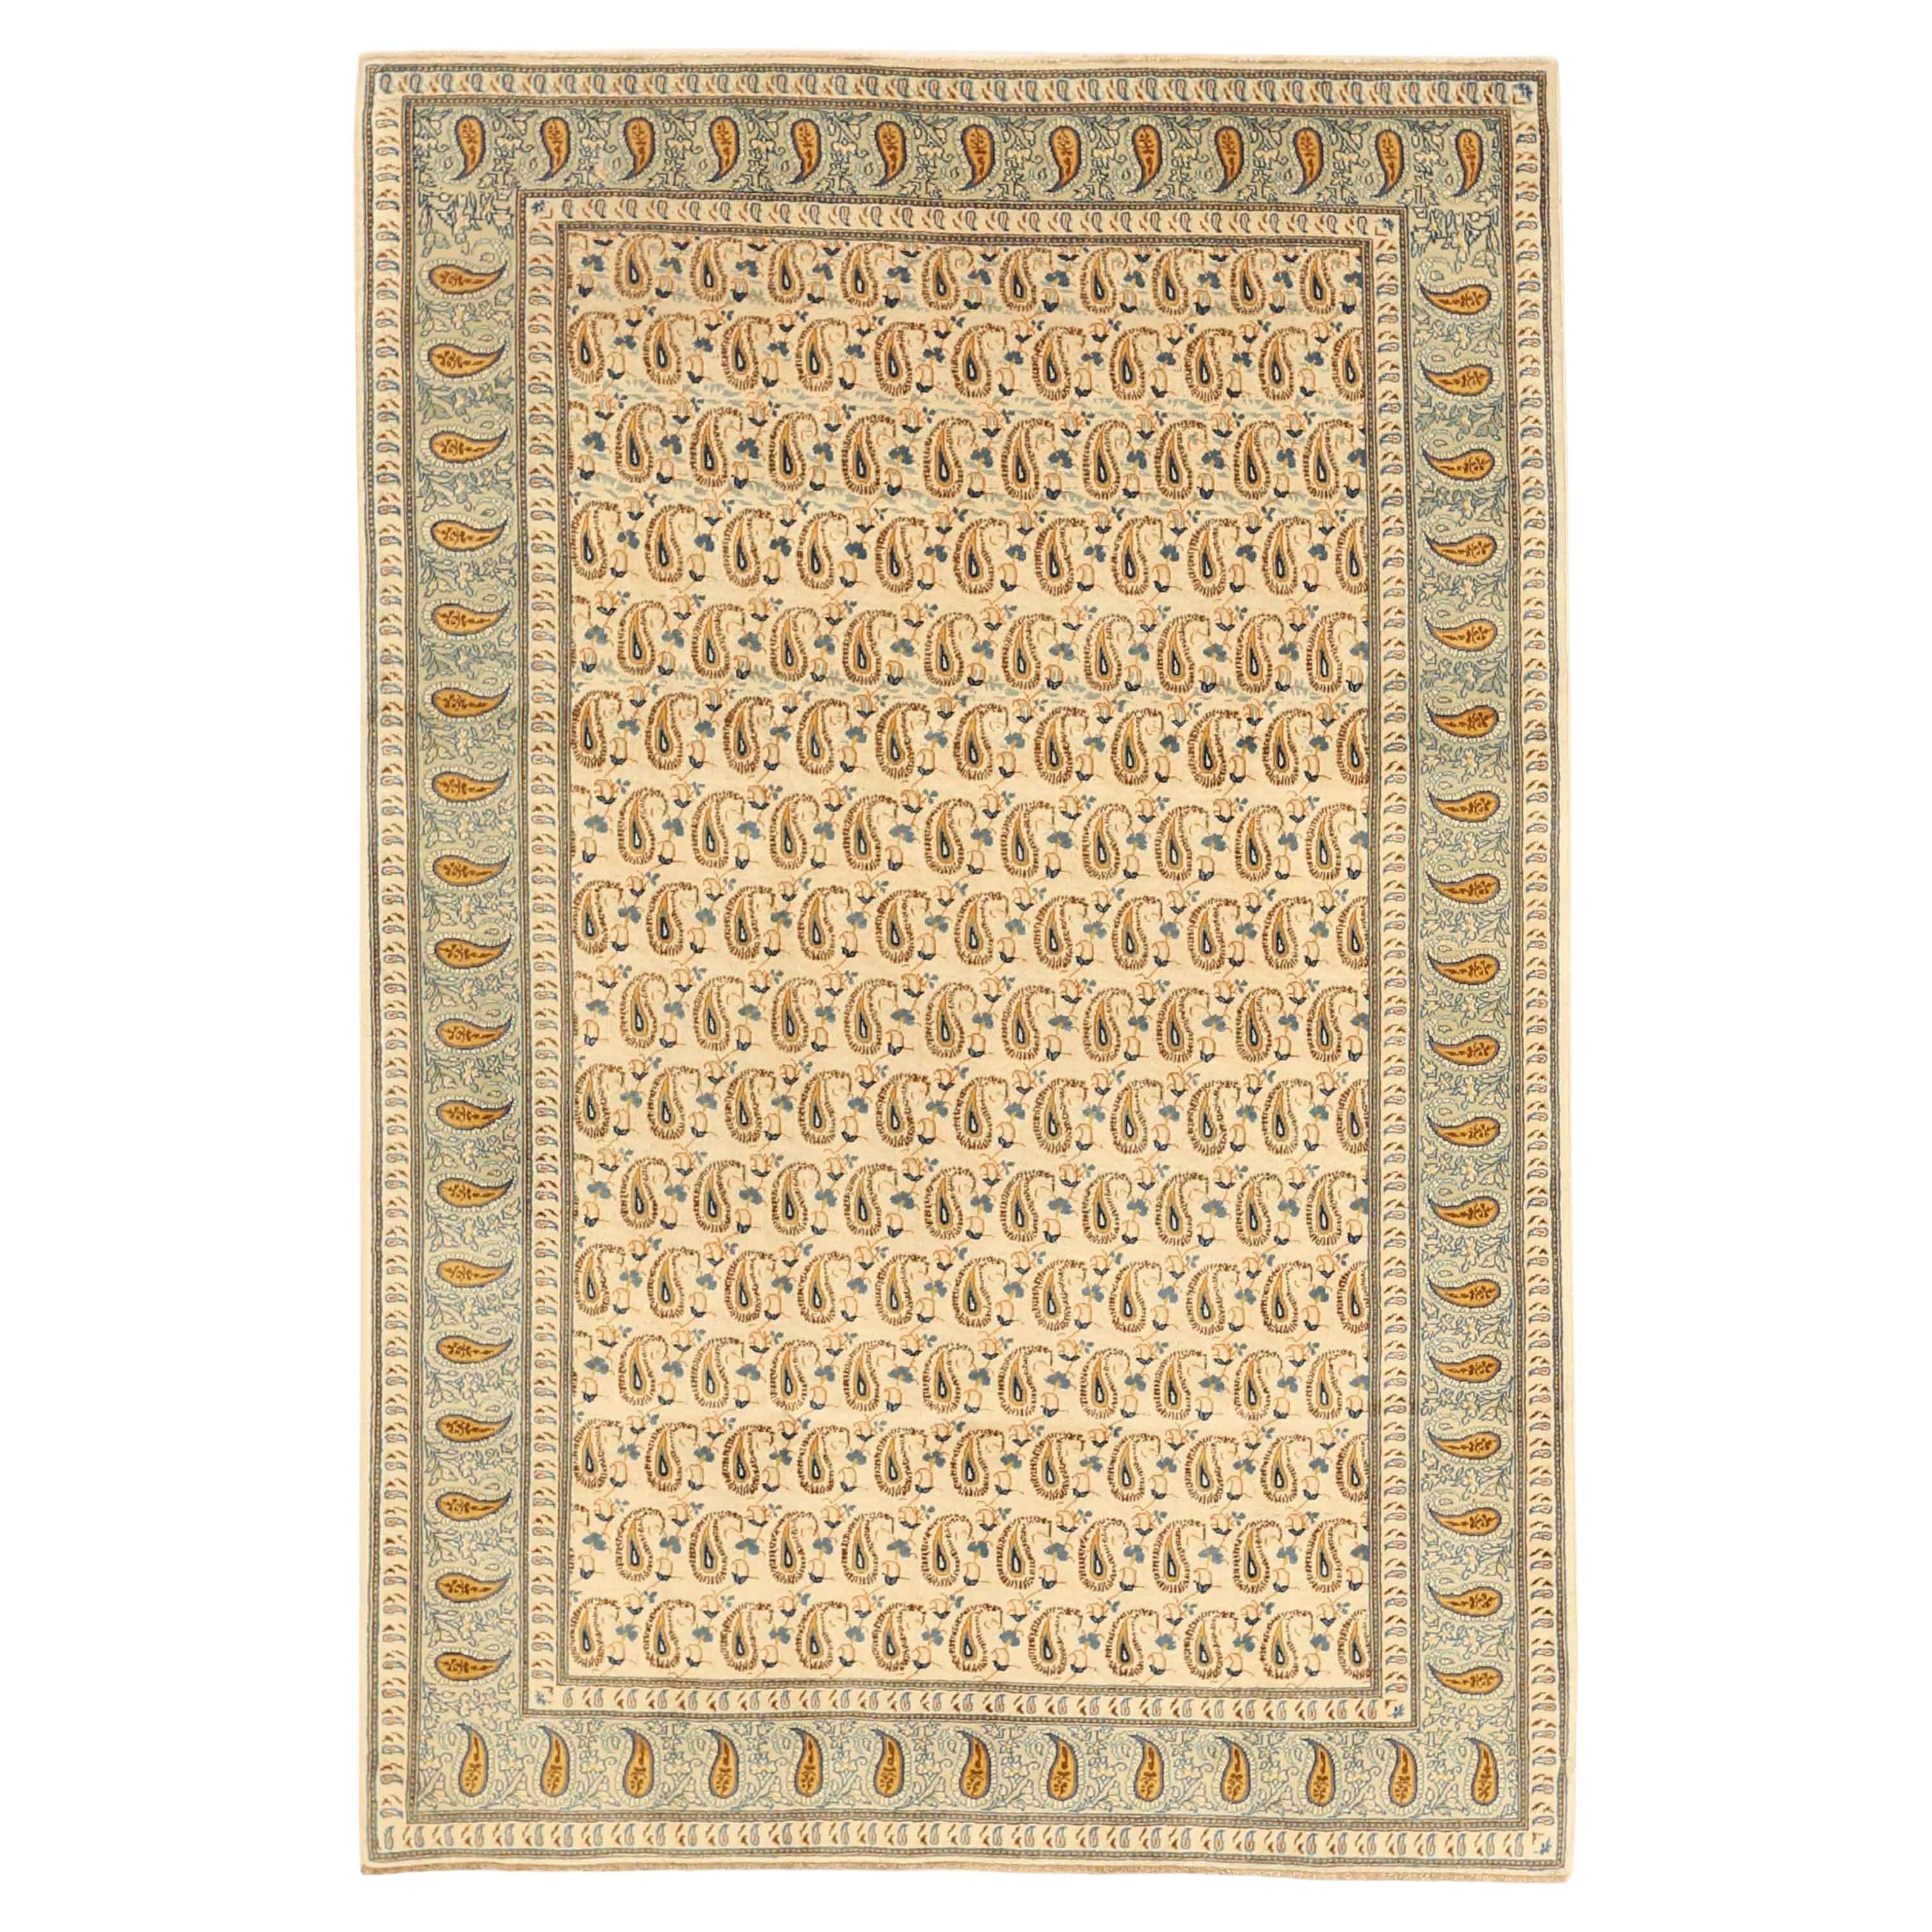 Antiker handgefertigter persischer Teppich im Kashan-Design